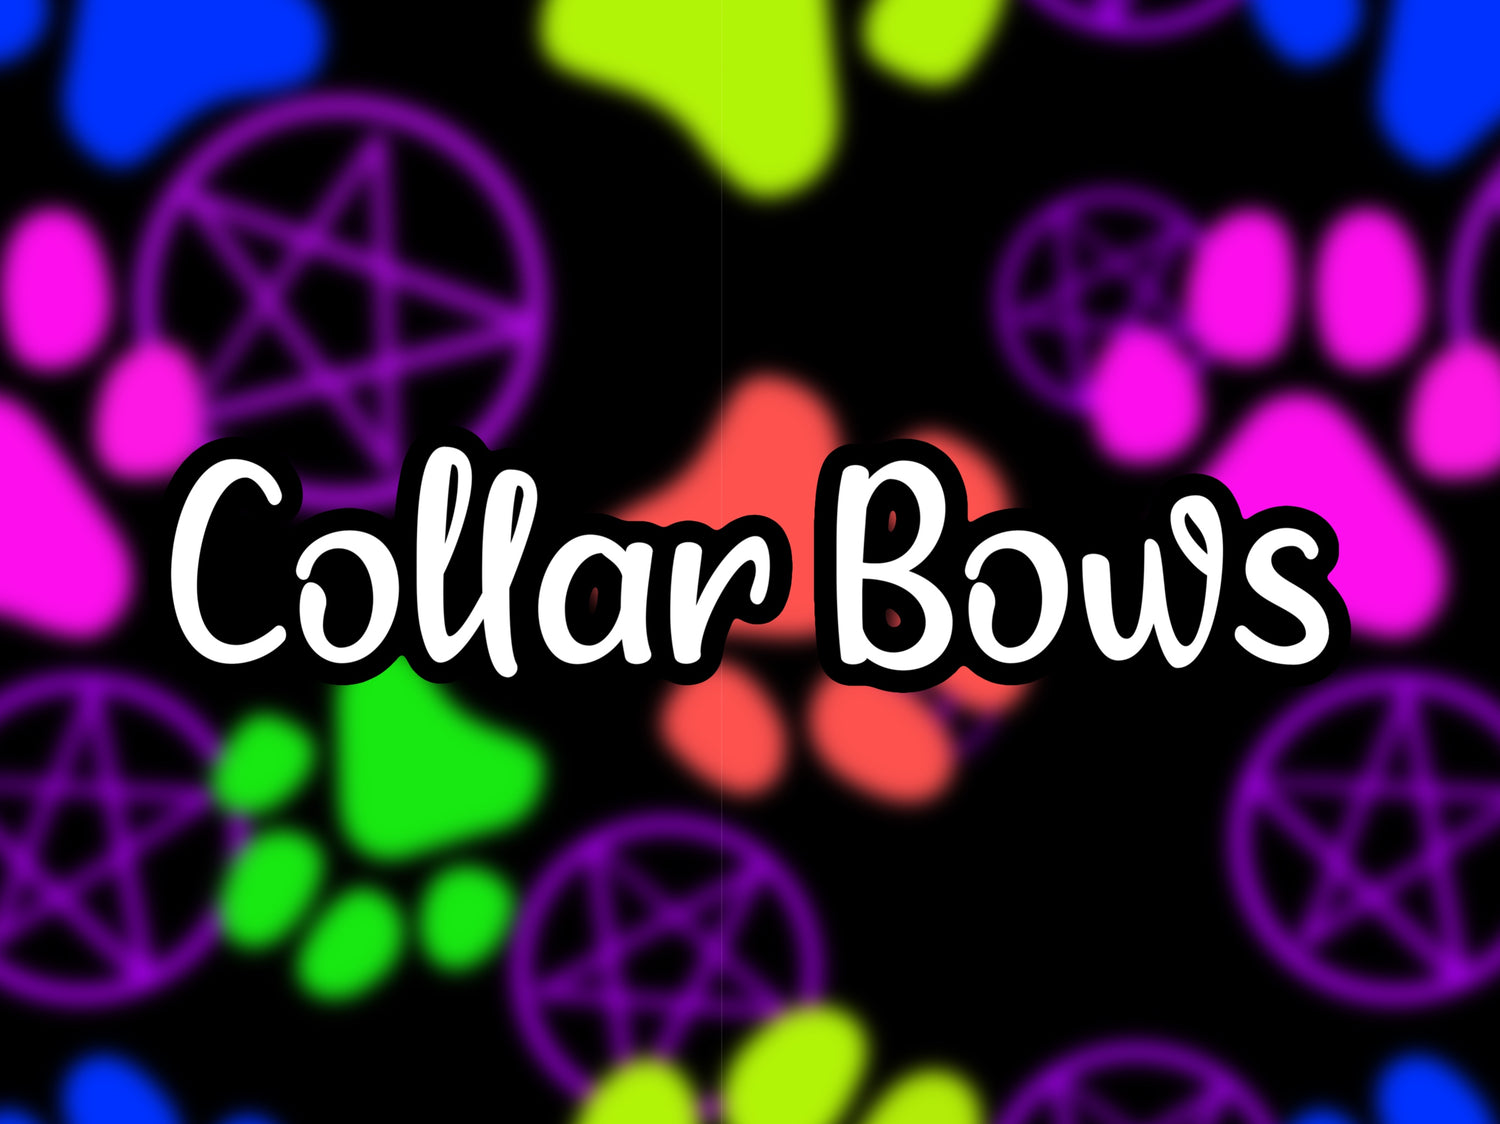 Collar Bows